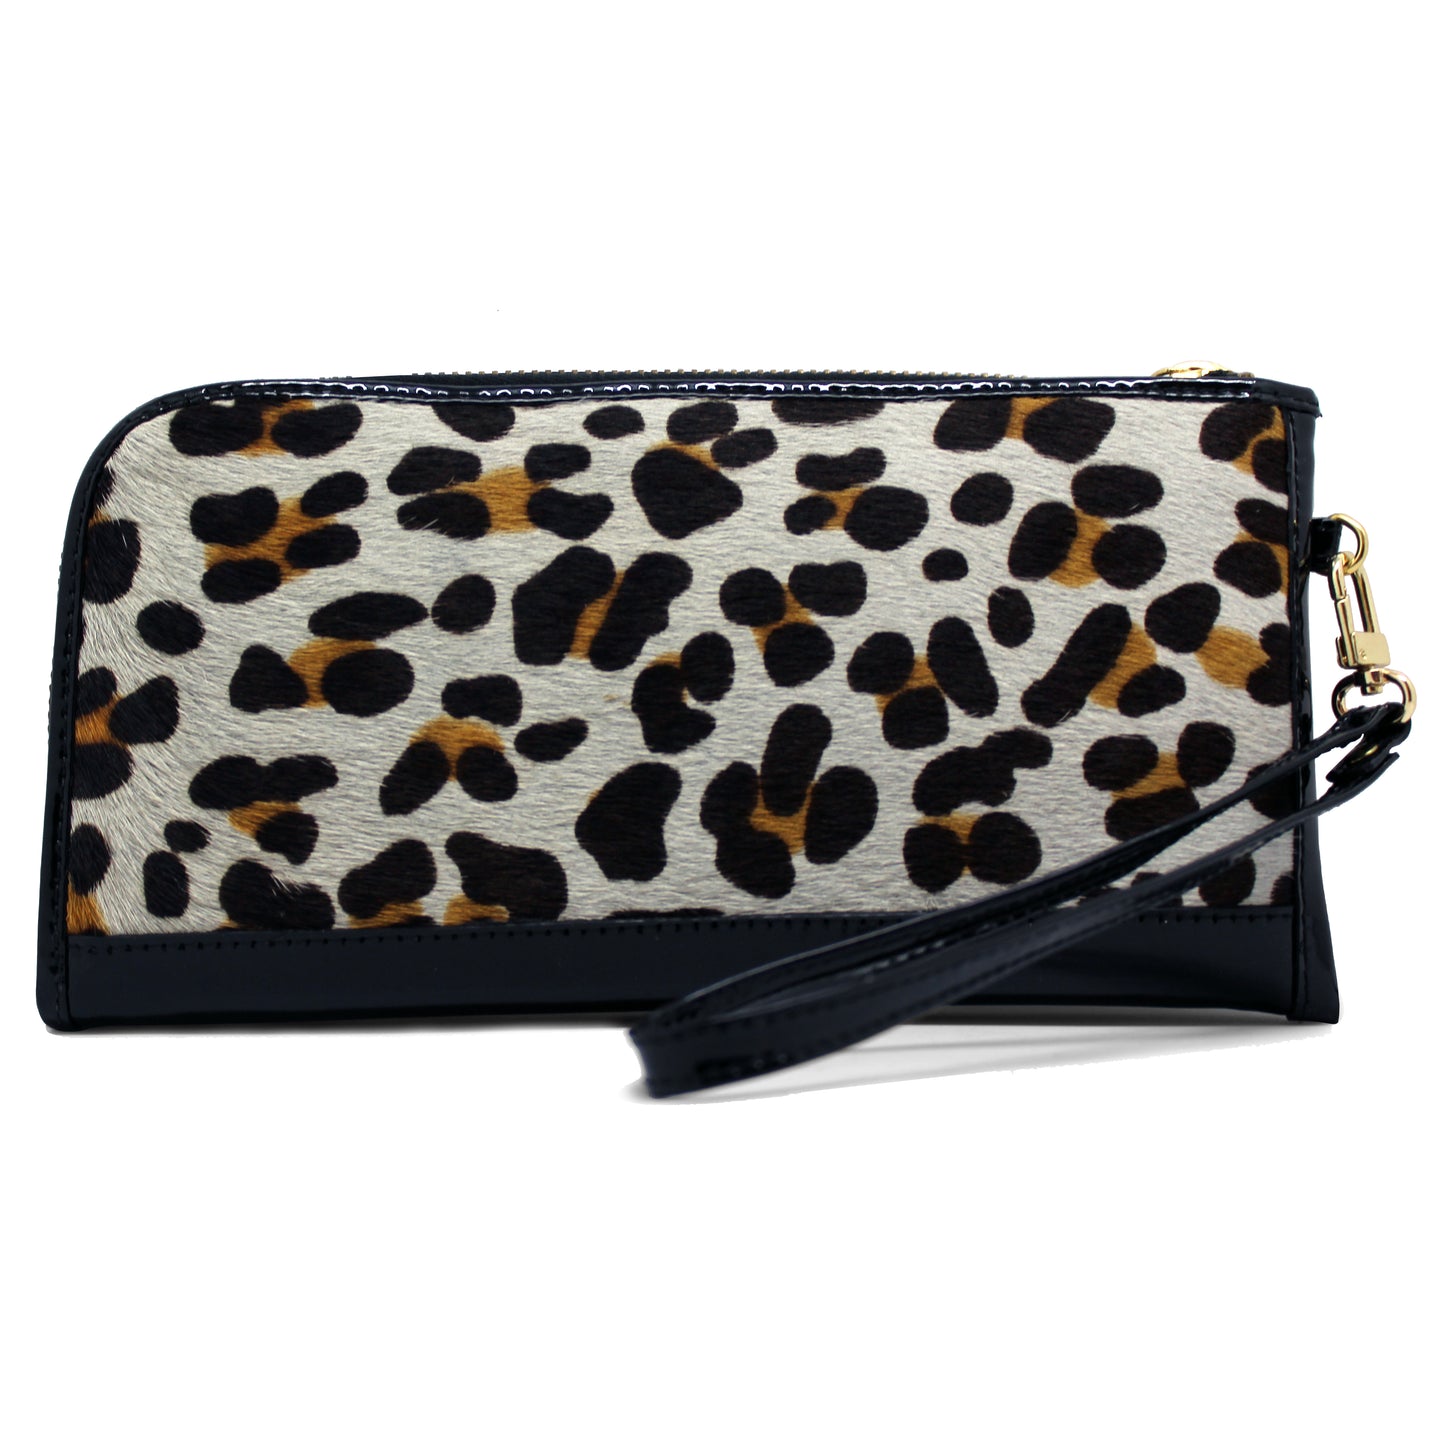 Savon - White Leopard wallet clutch